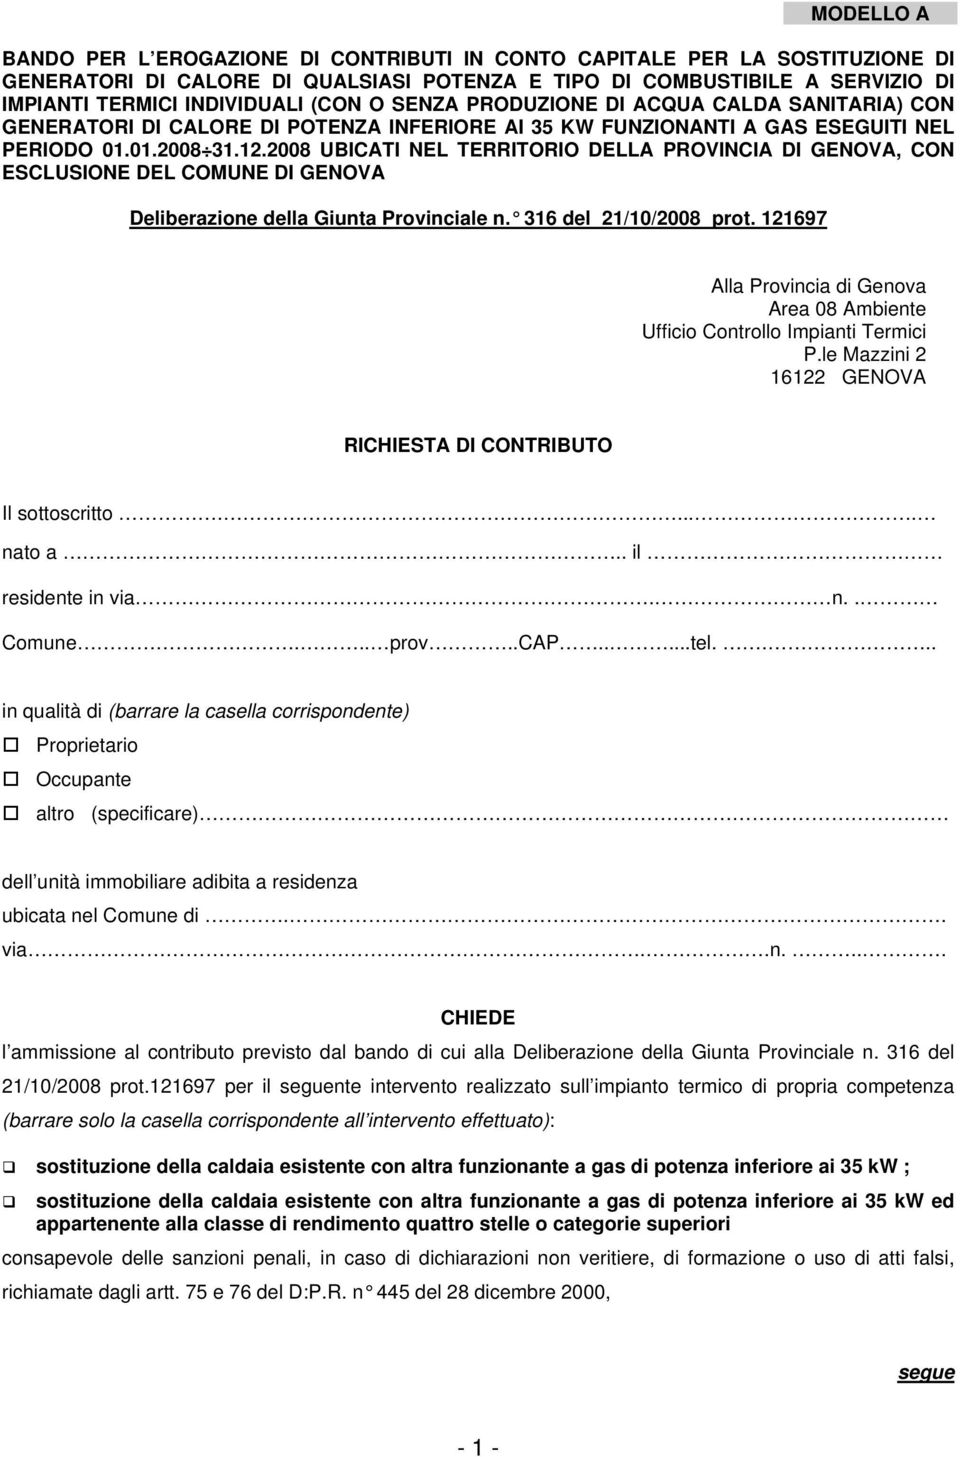 2008 UBICATI NEL TERRITORIO DELLA PROVINCIA DI GENOVA, CON ESCLUSIONE DEL COMUNE DI GENOVA Deliberazione della Giunta Provinciale n. 316 del 21/10/2008 prot.